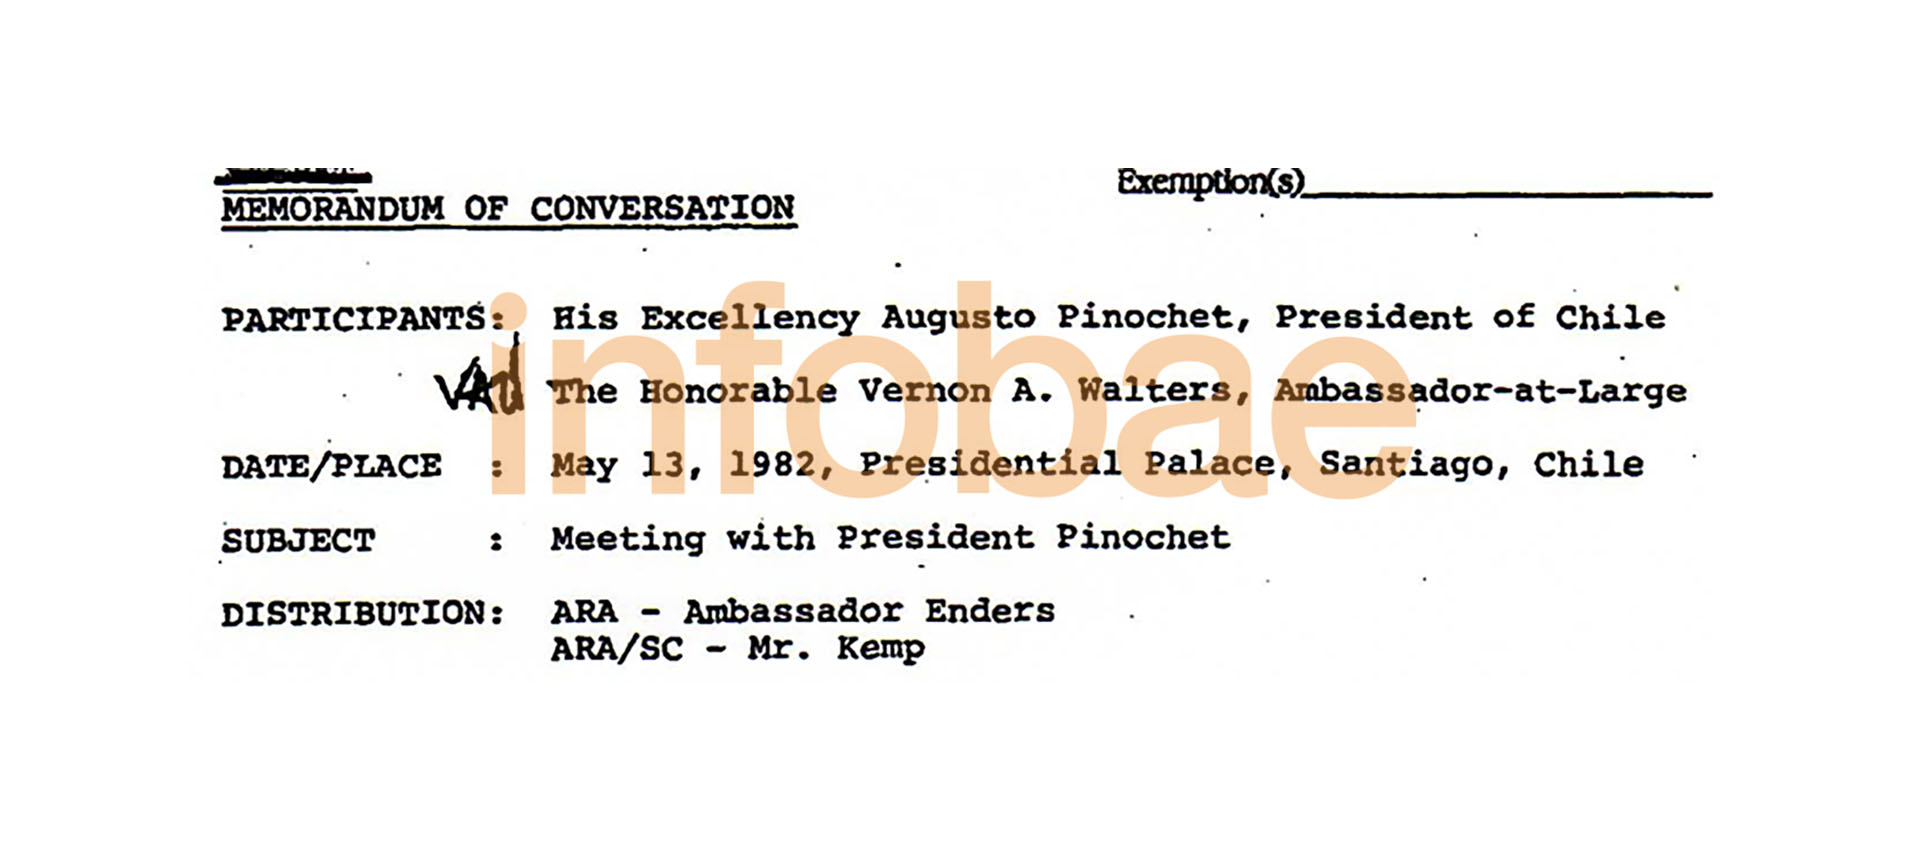 El Memorandum sobre la reunión con Pinochet